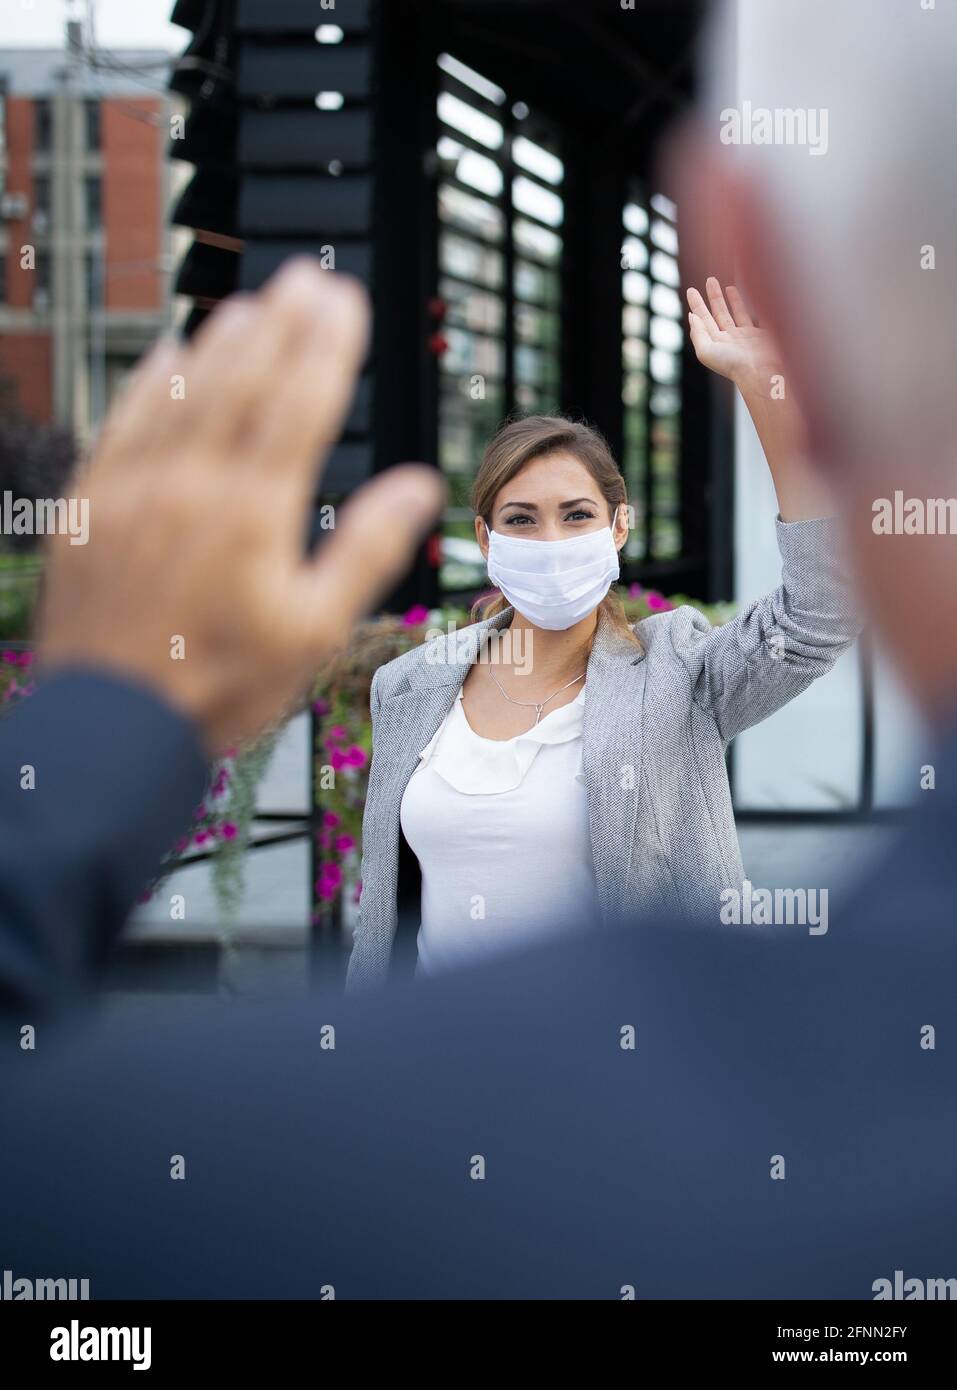 Donna d'affari con maschera di sicurezza e saluto dell'uomo agitando le mani di fronte all'edificio dell'ufficio. Protezione da virus e concetto di allontanamento sociale sul luogo di lavoro Foto Stock